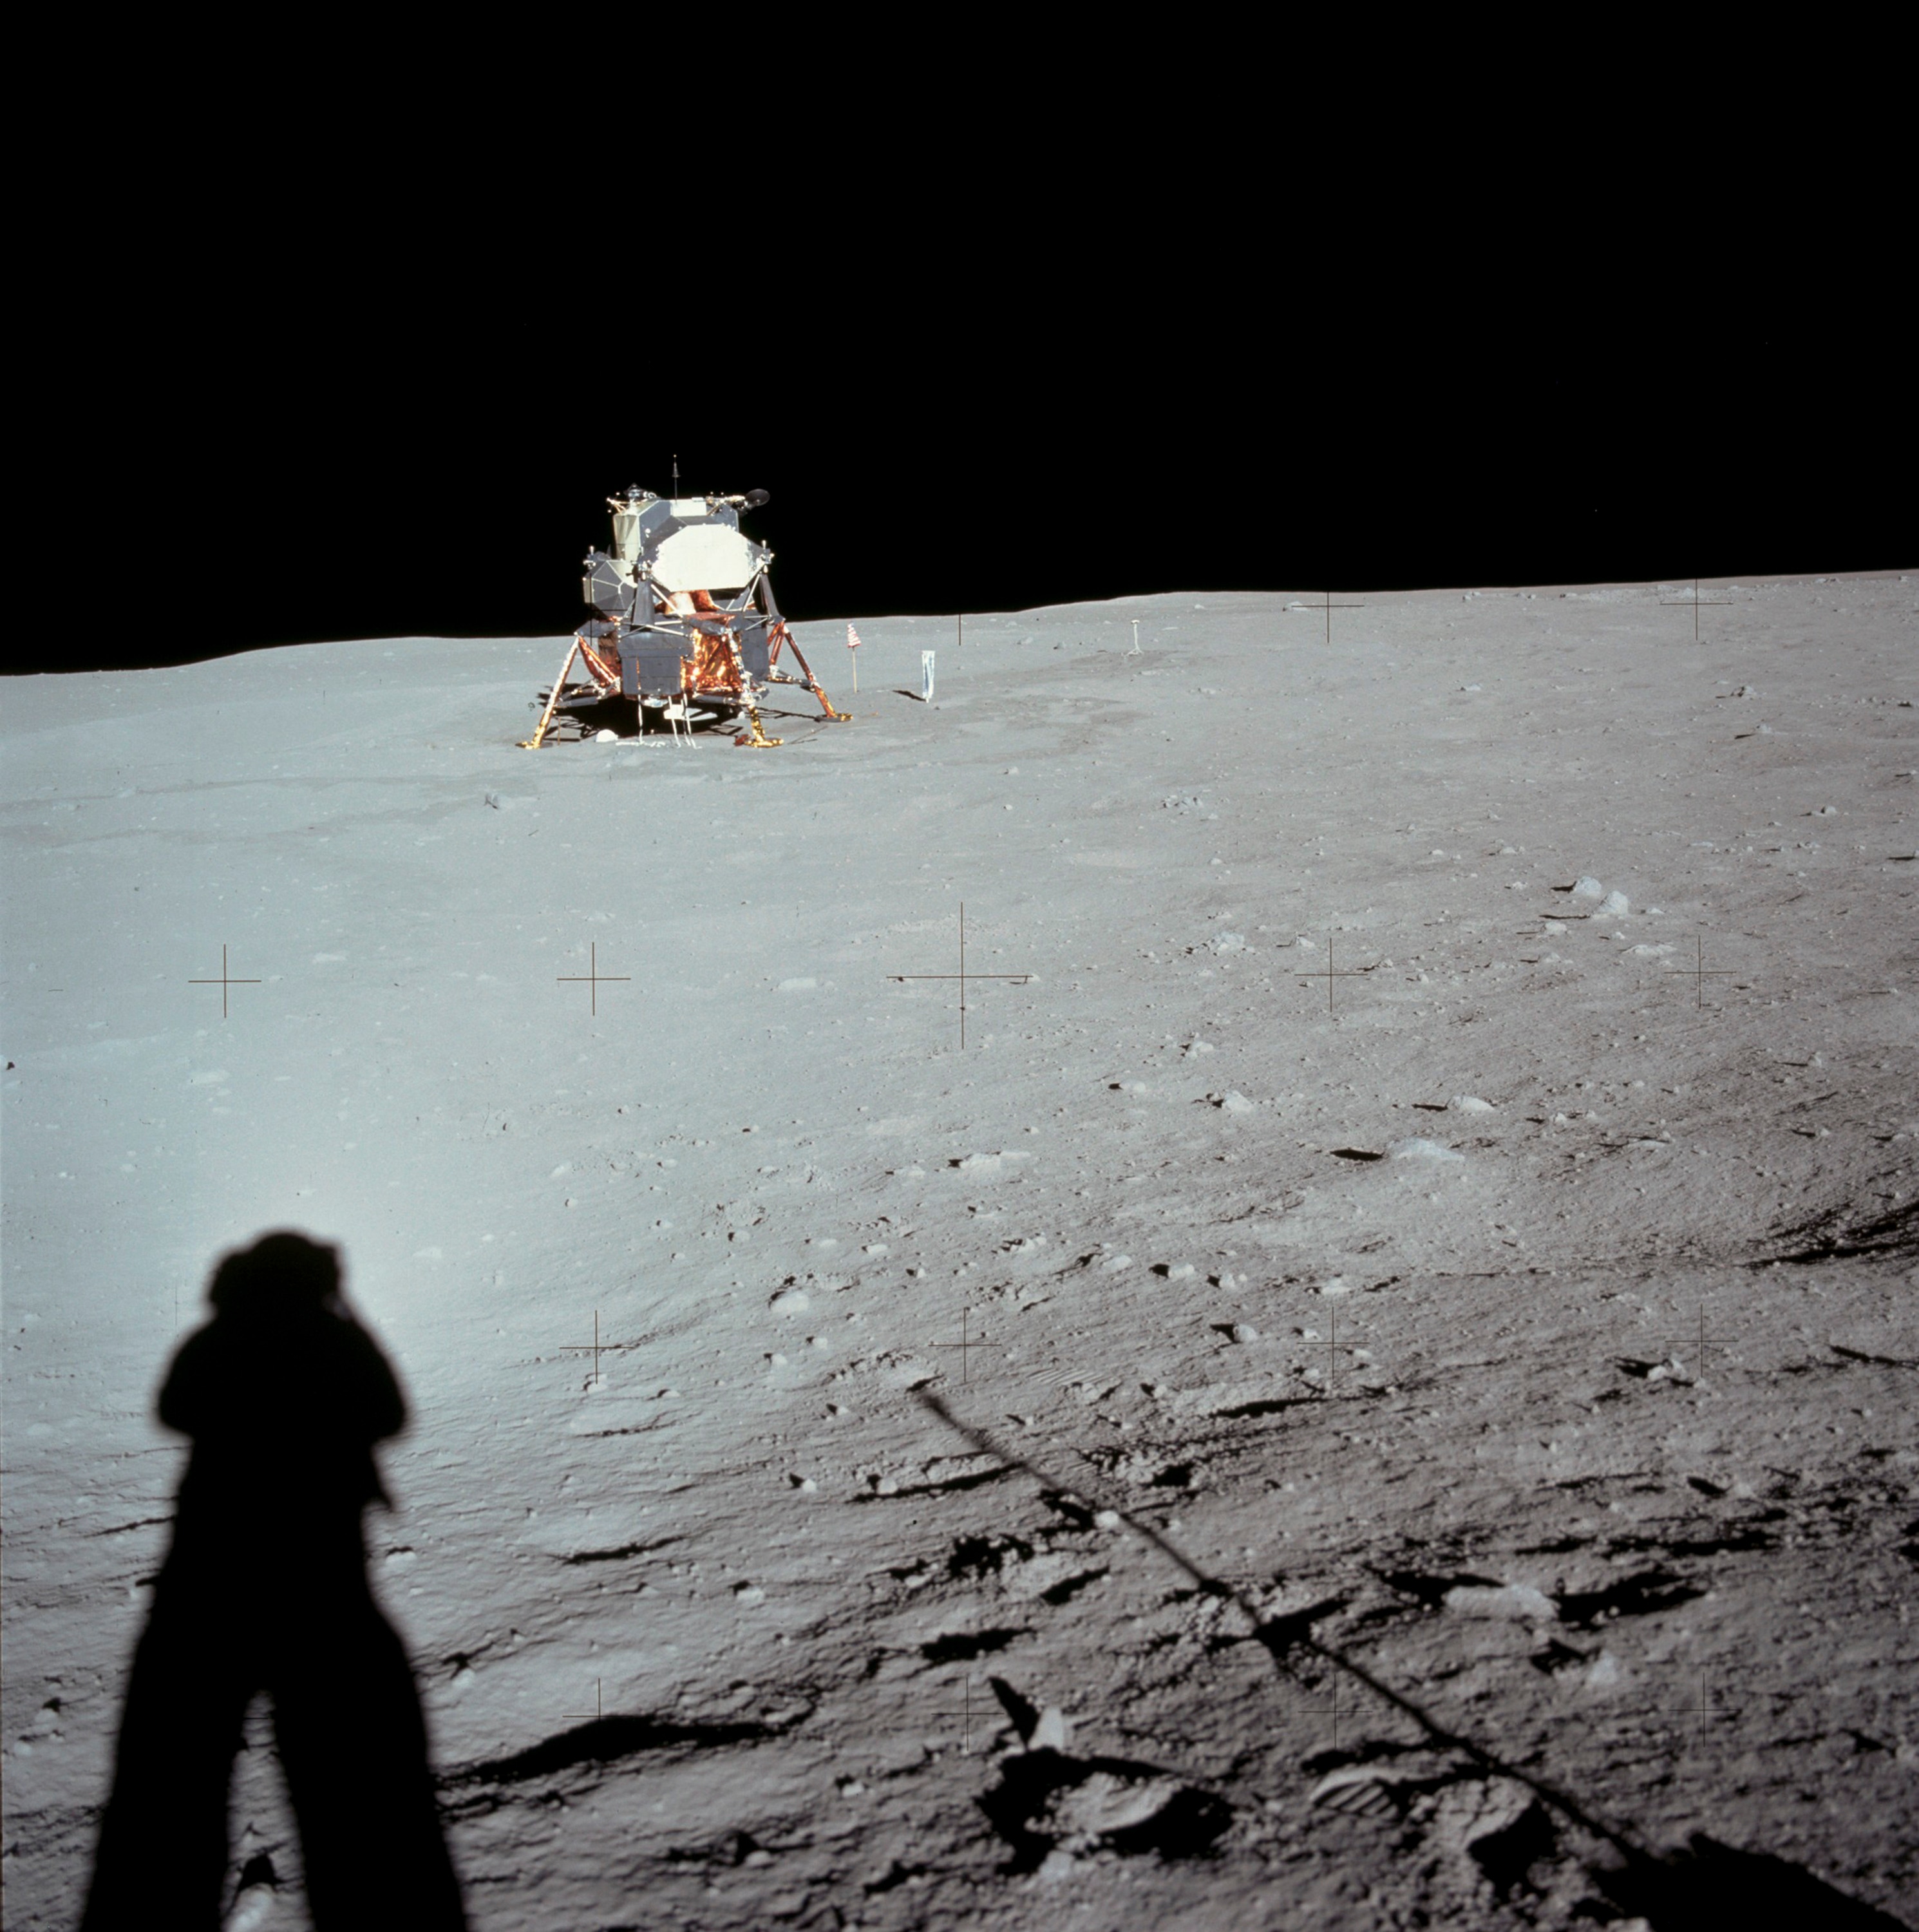 Immagine scattata da Neil Amstrong della prima ombra umana sulla luna. Sullo sfondo il modulo lunare con cui i due astronauti sono giunti sulla luna